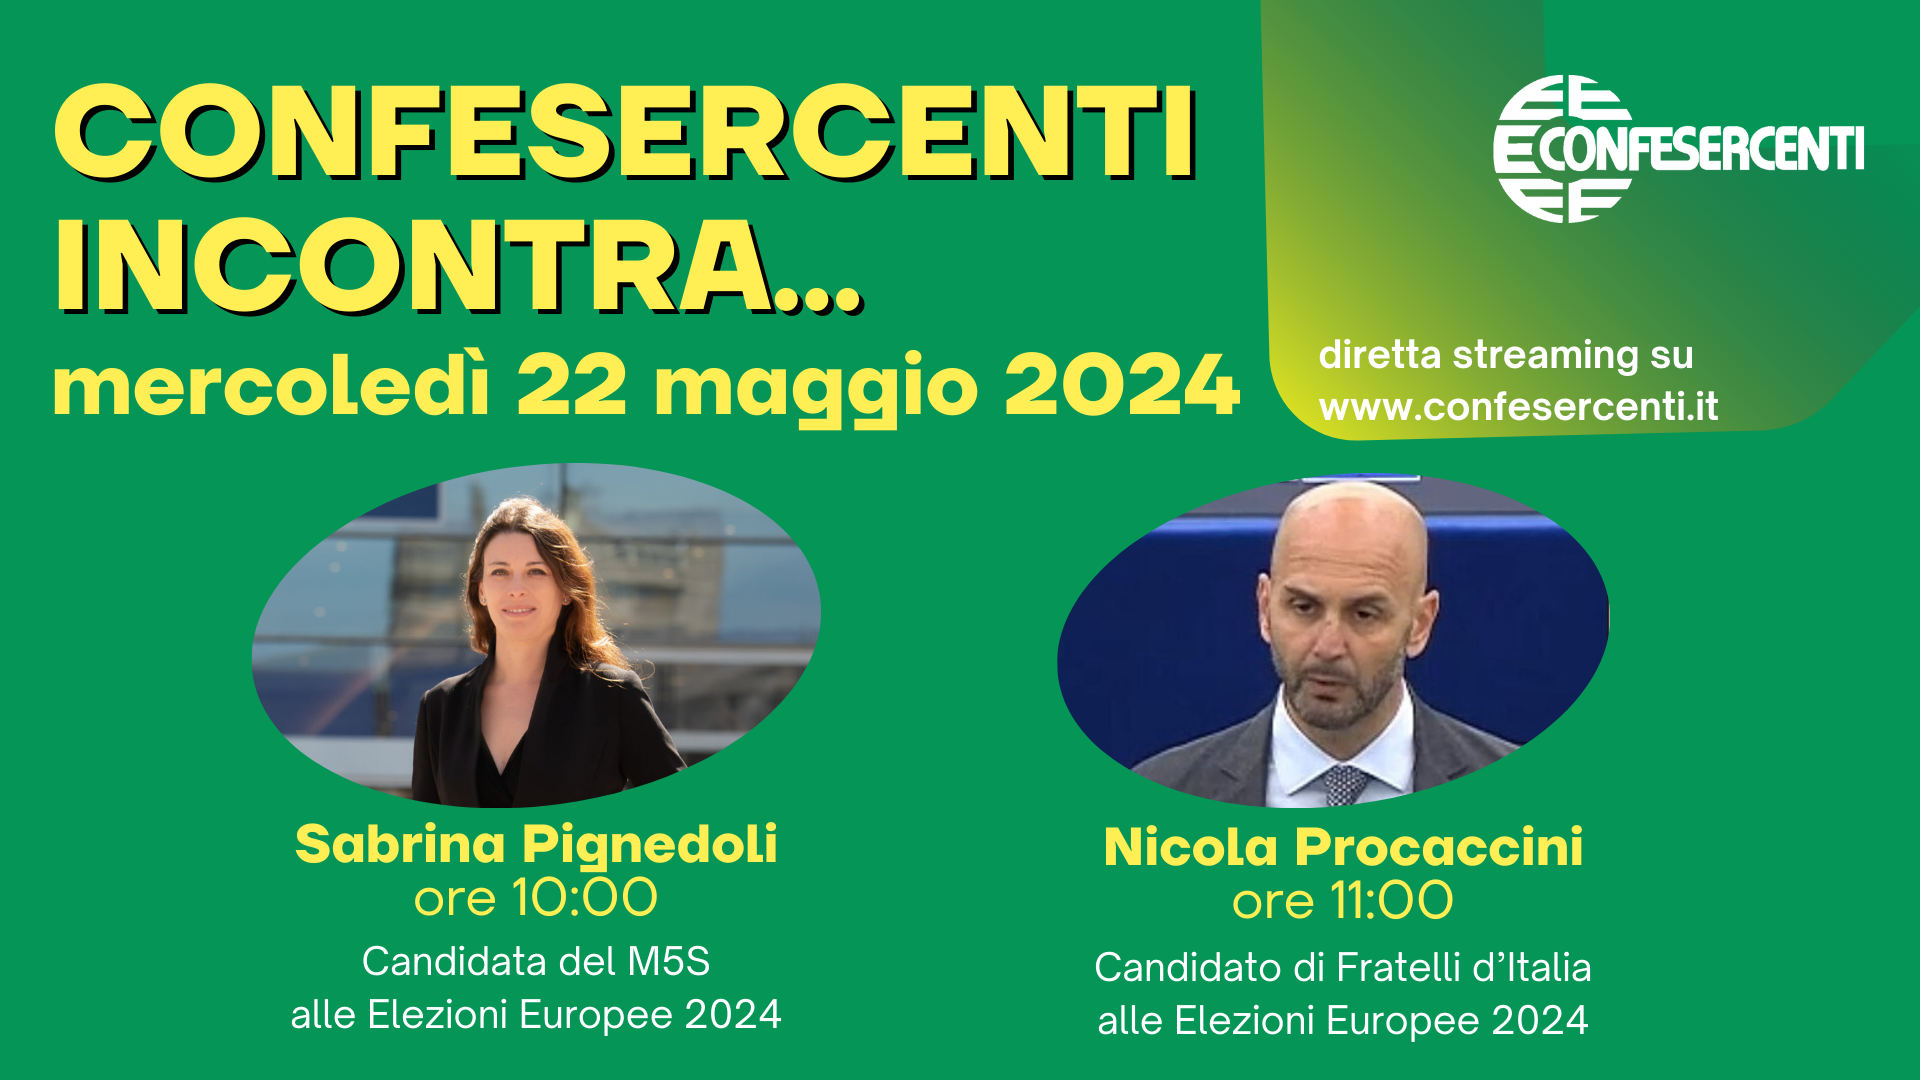 Elezioni UE: ‘Confesercenti incontra’ continua mercoledì 22 maggio con i candidati Sabrina Pignedoli e Nicola Procaccini